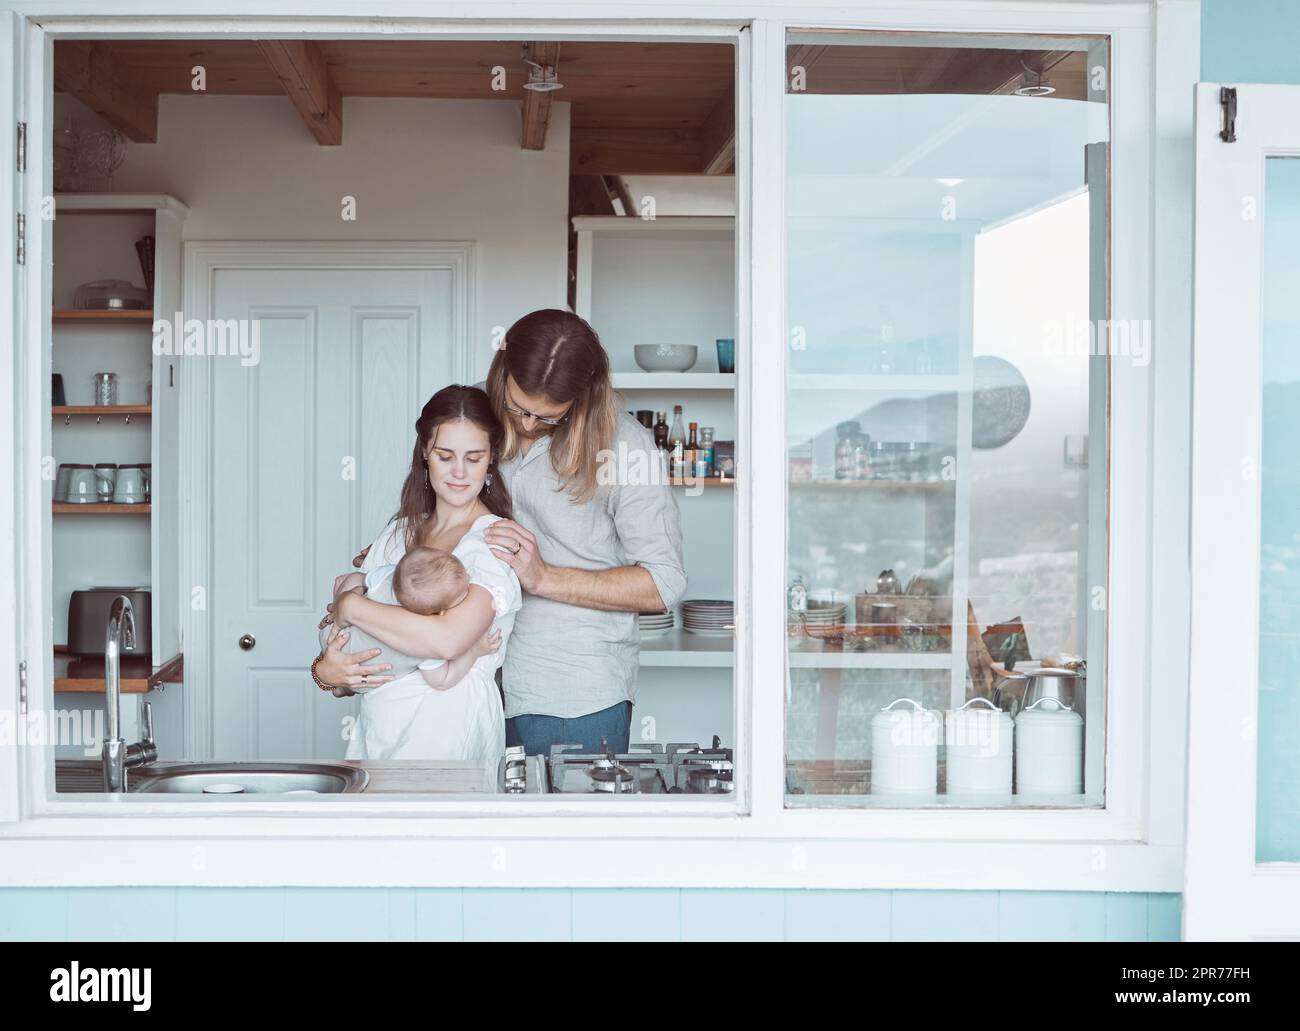 Kein Mangel an Liebe hier. Aufnahme einer jungen Familie, die ihr Neugeborenes liebevoll in der Küche zu Hause hält. Stockfoto